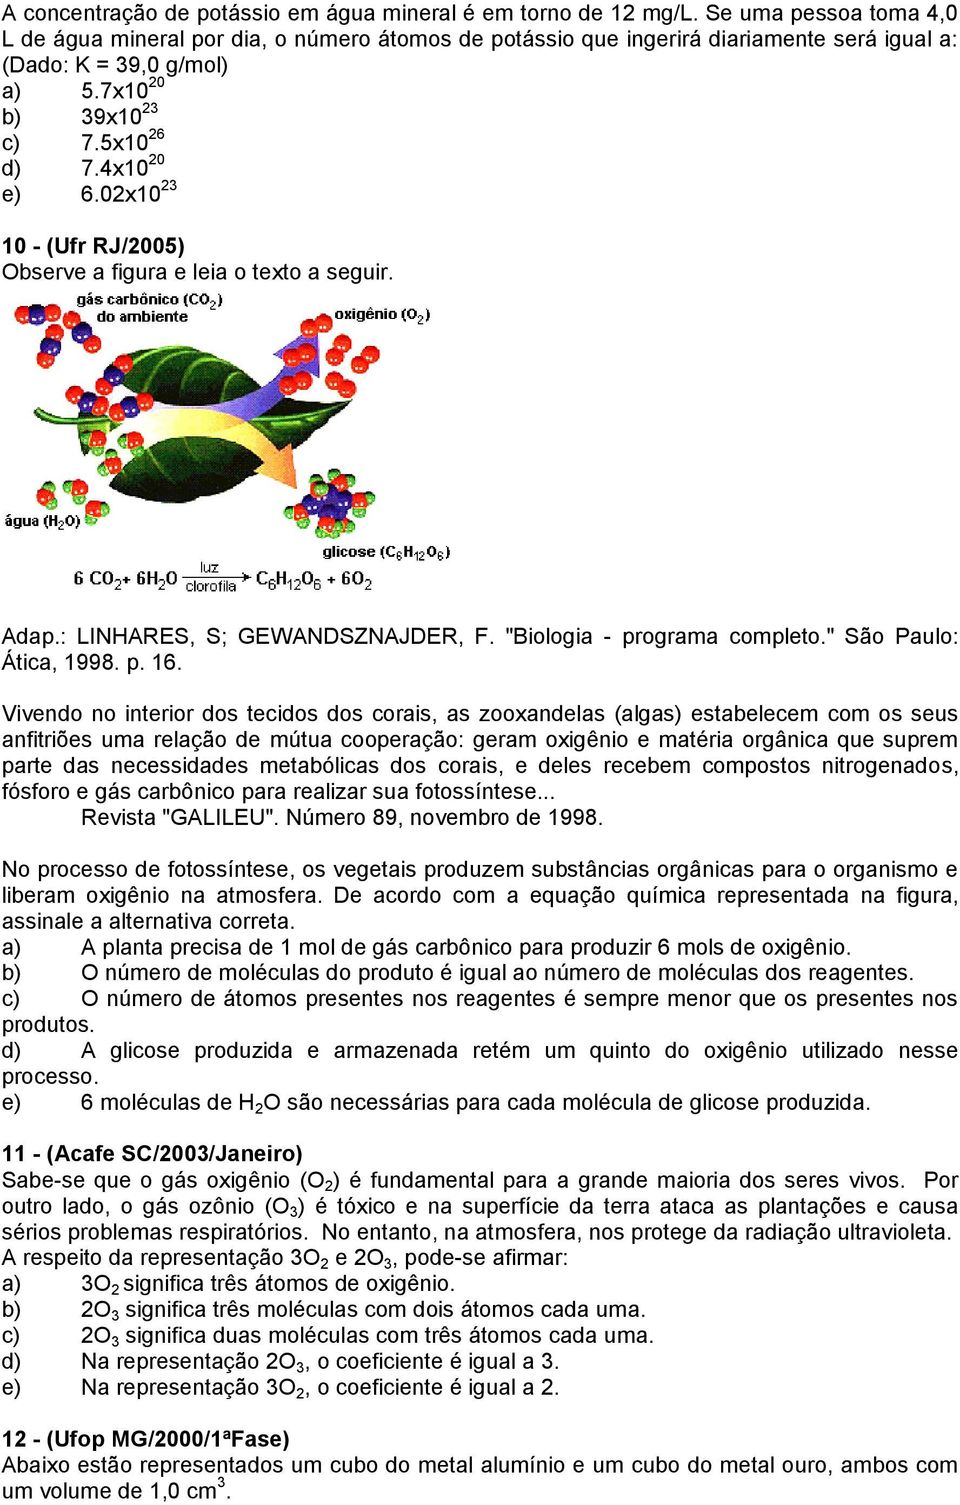 02x10 23 10 - (Ufr RJ/2005) Observe a figura e leia o texto a seguir. Adap.: LINHARES, S; GEWANDSZNAJDER, F. "Biologia - programa completo." São Paulo: Ática, 1998. p. 16.